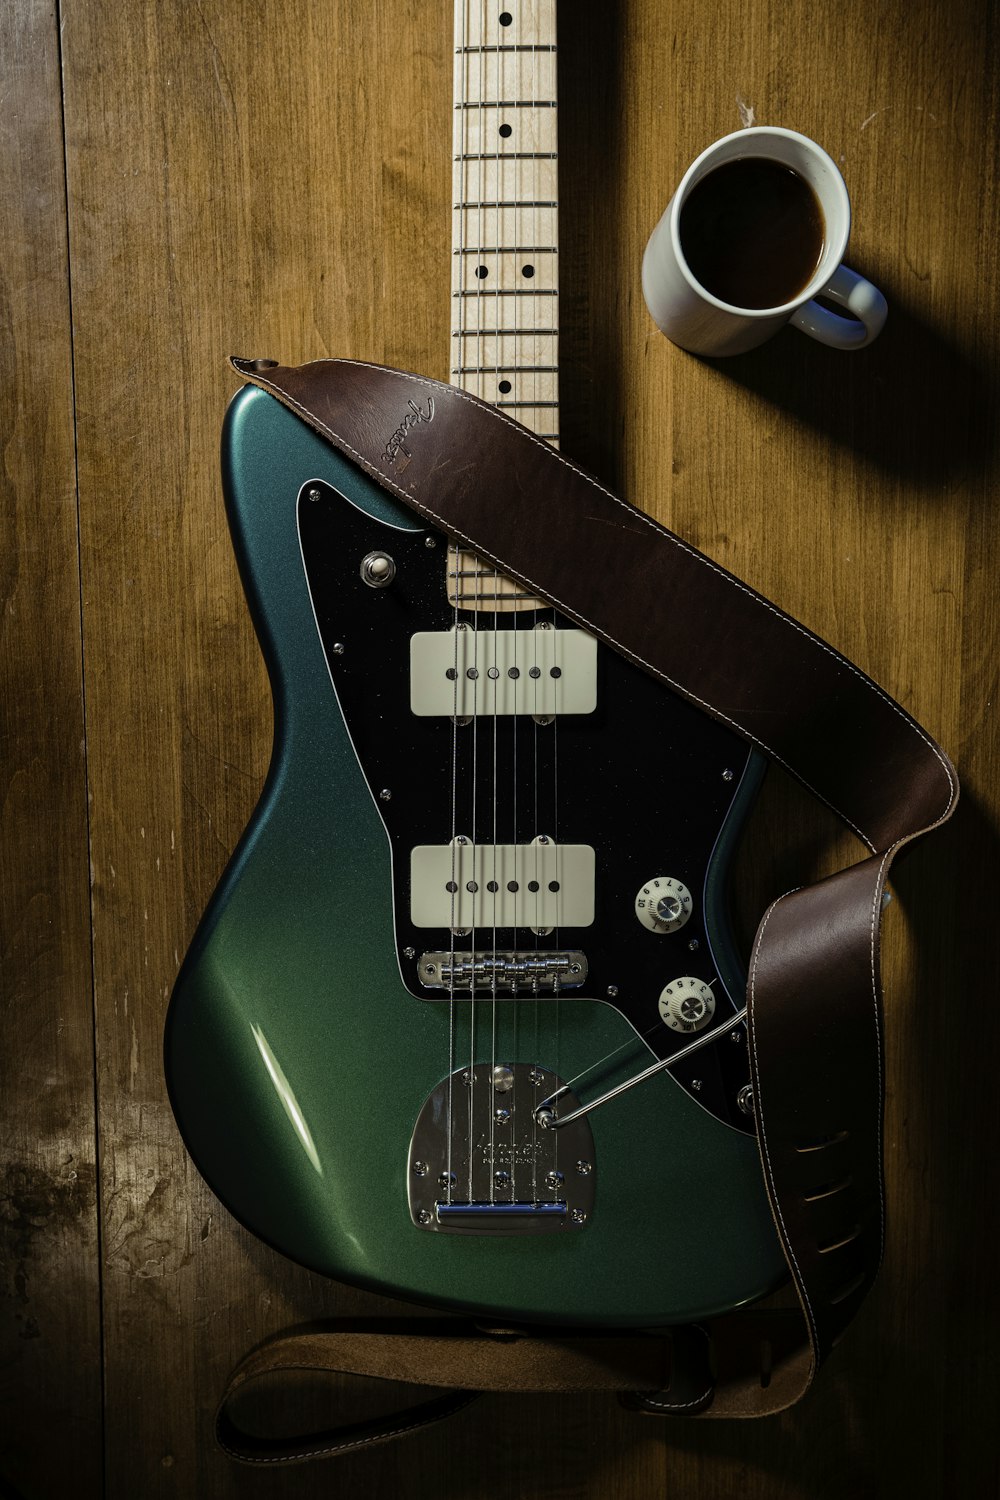 Una guitarra verde sentada encima de una mesa junto a una taza de café